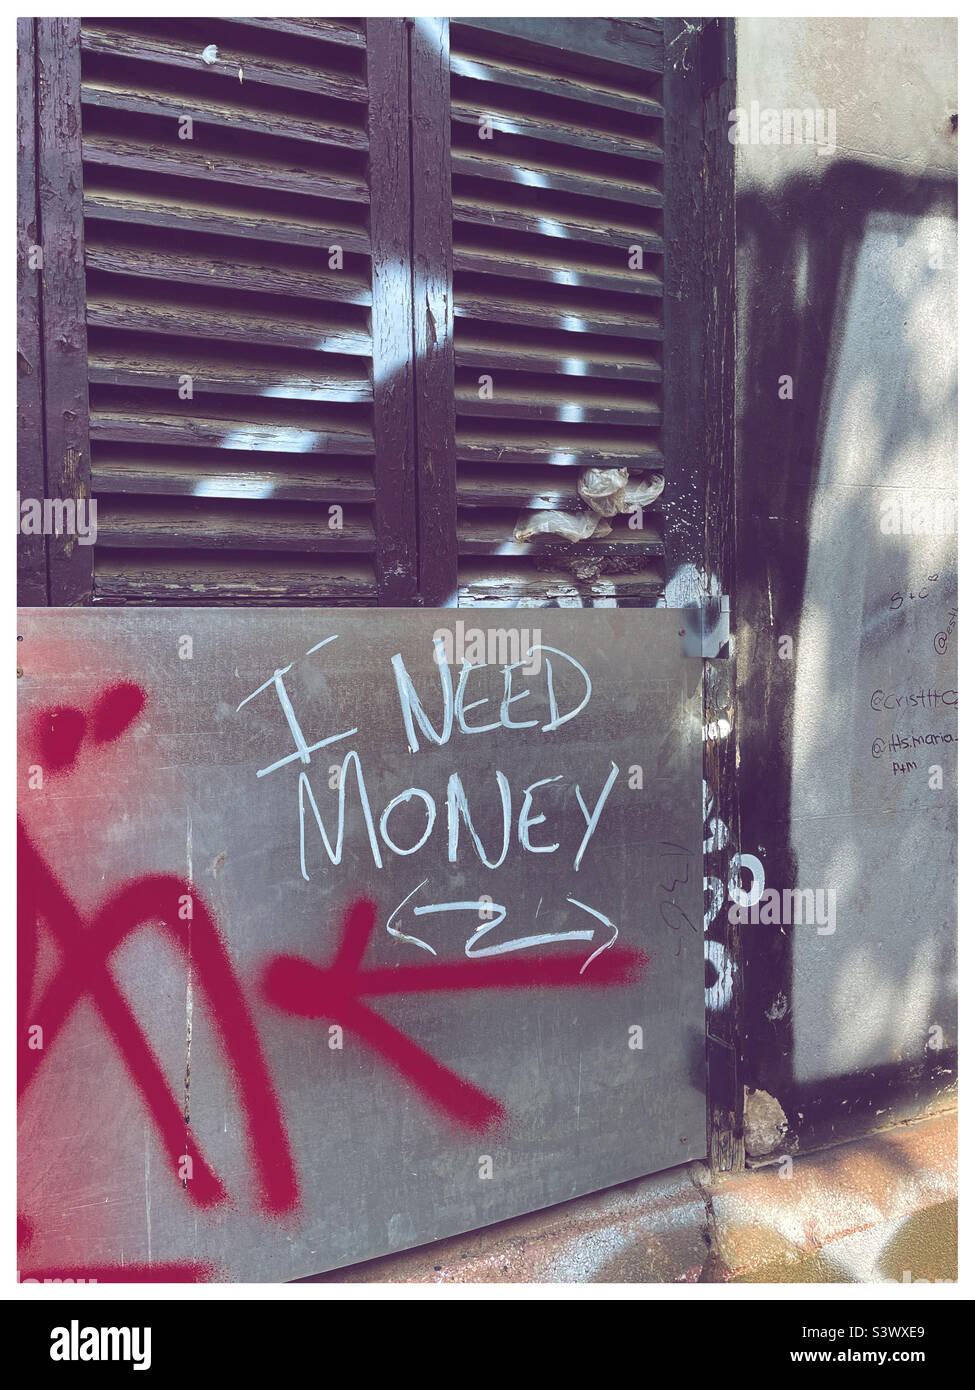 I need money graffiti, Stock Photo